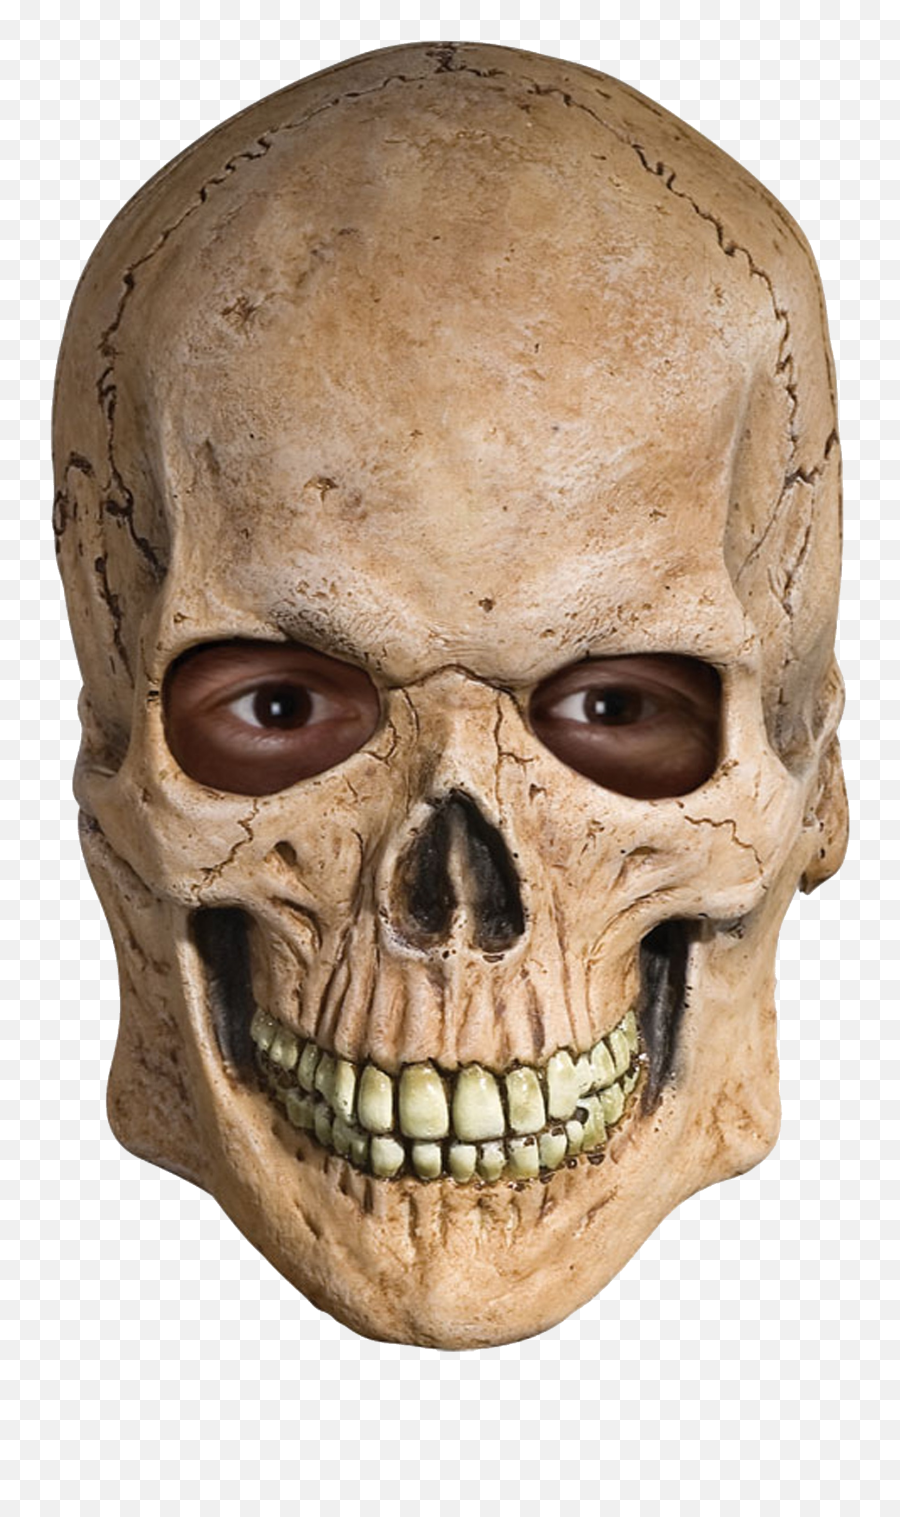 Human Skull Transparent Background - Skeleton Head Mask Emoji,Skull Transparent